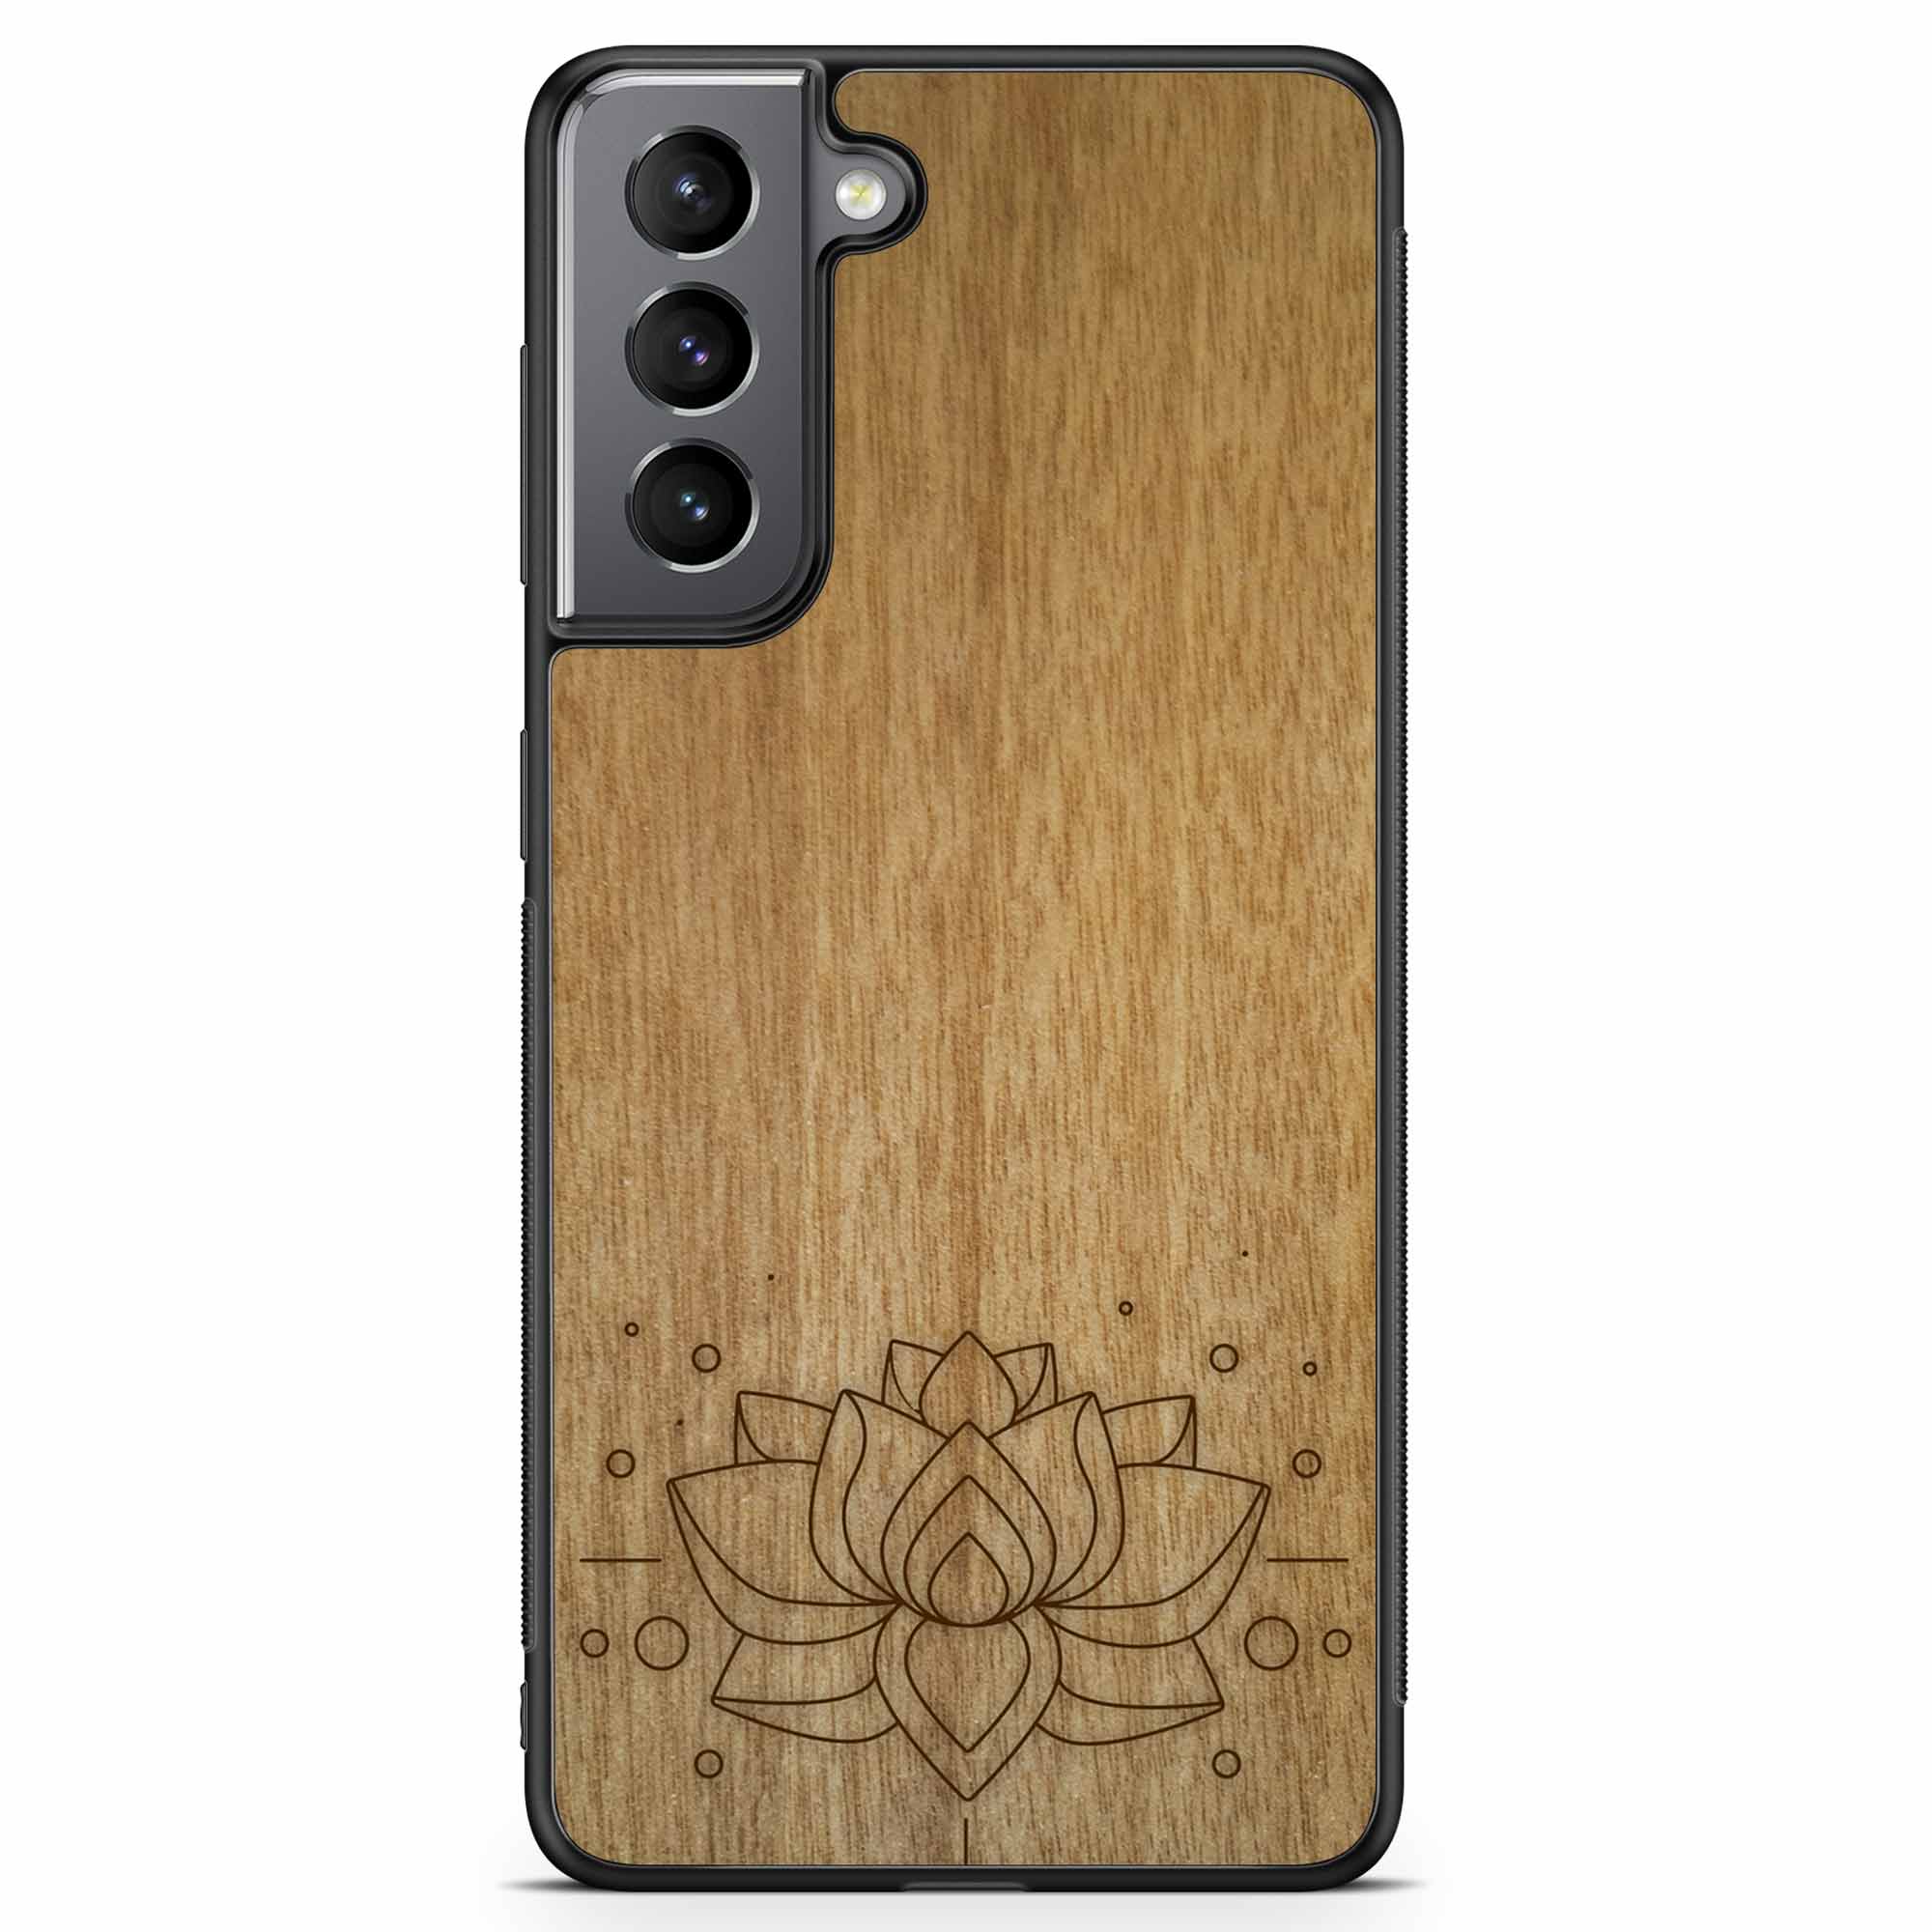 Carcasa de madera para teléfono con grabado Lotus Samsung S21